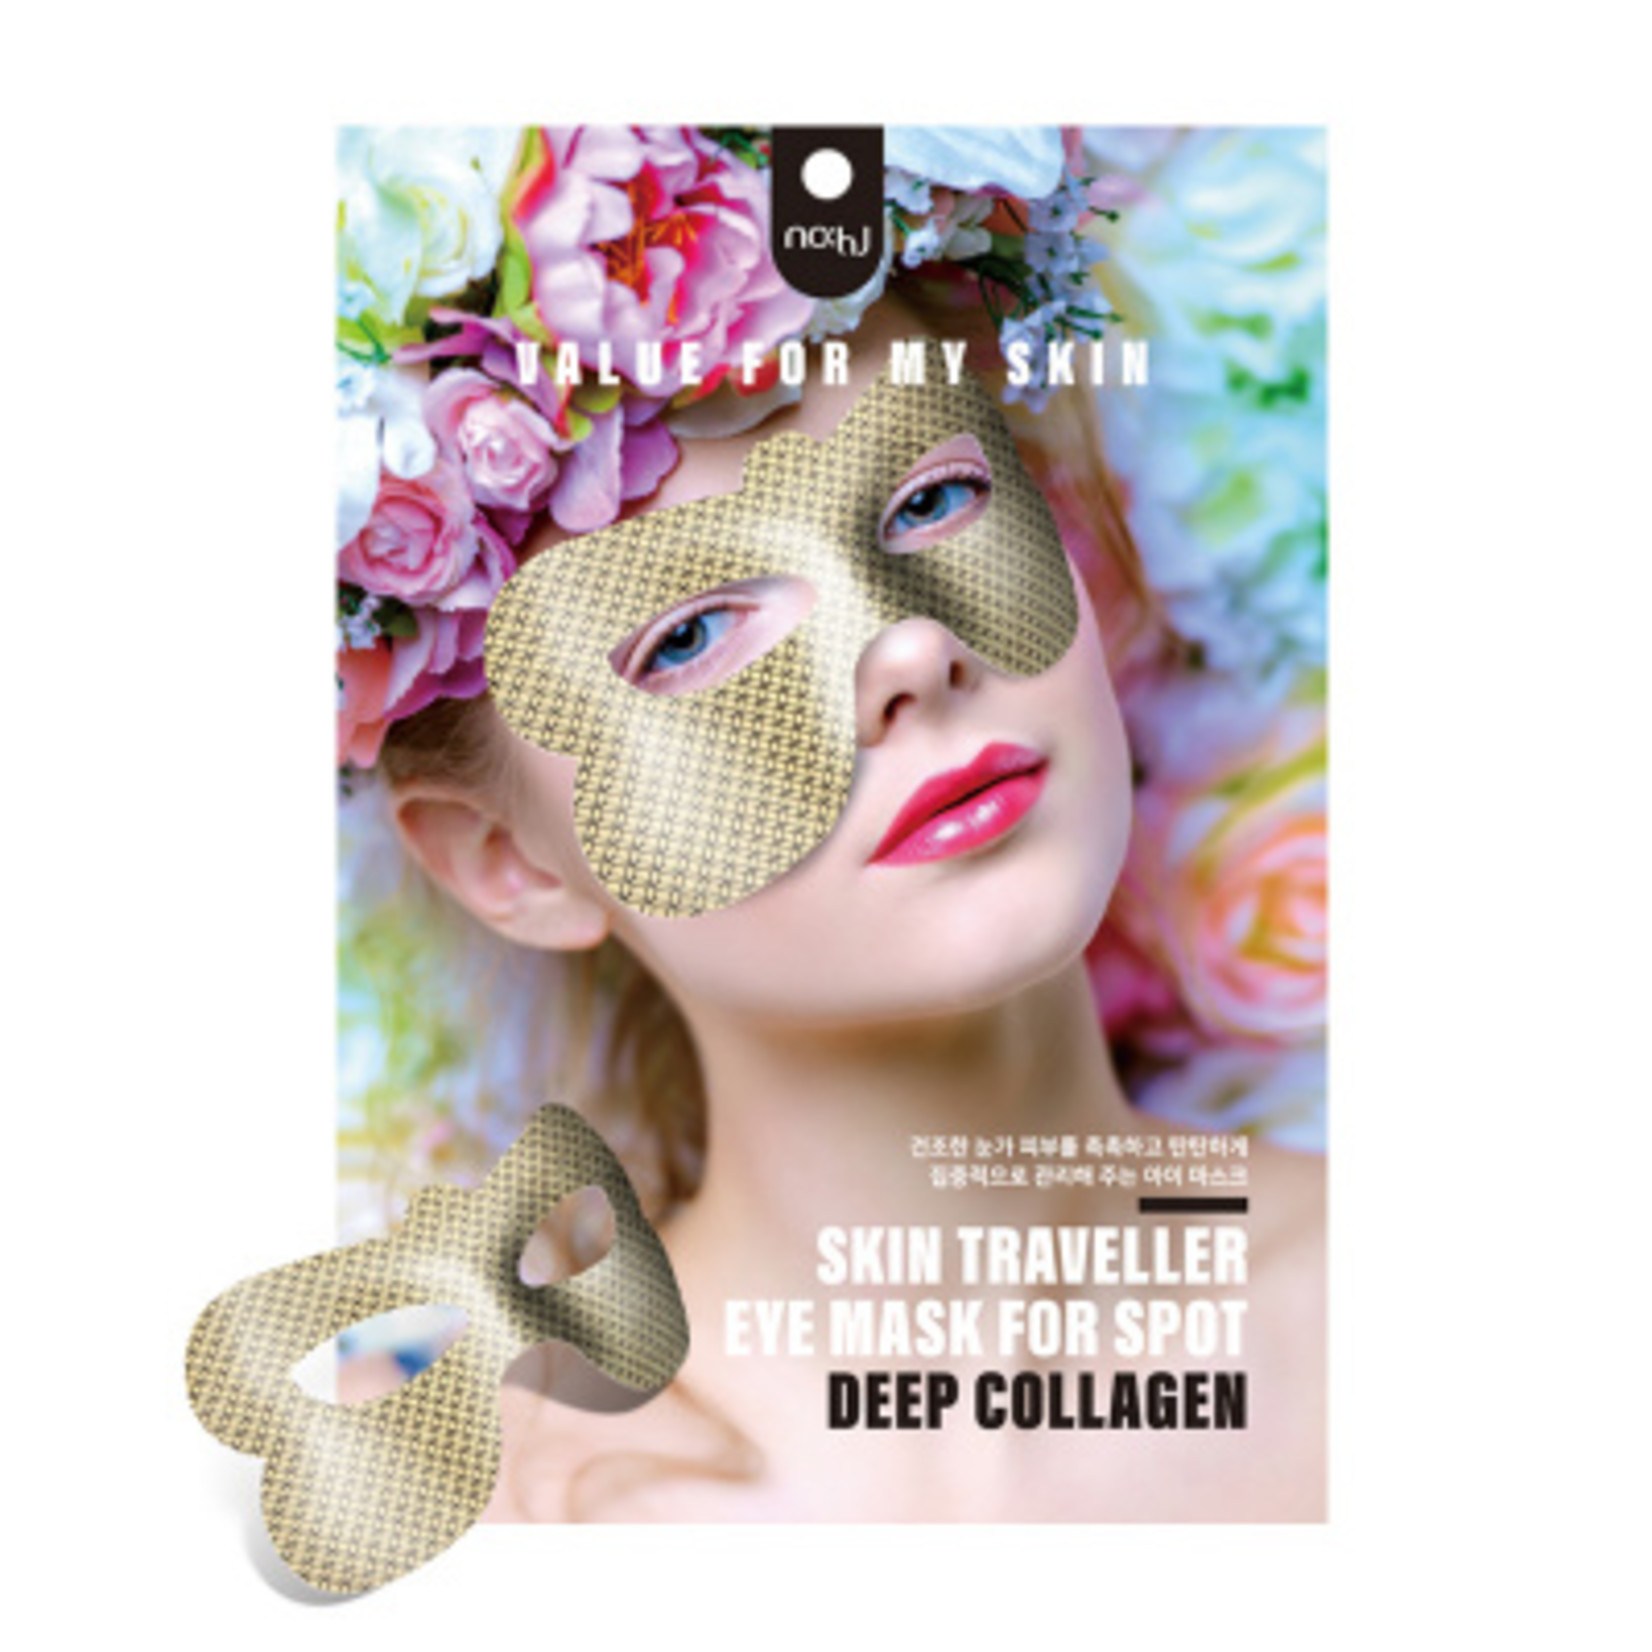 nohj Skin Traveller Eye Mask For Spot [Deep Collagen]